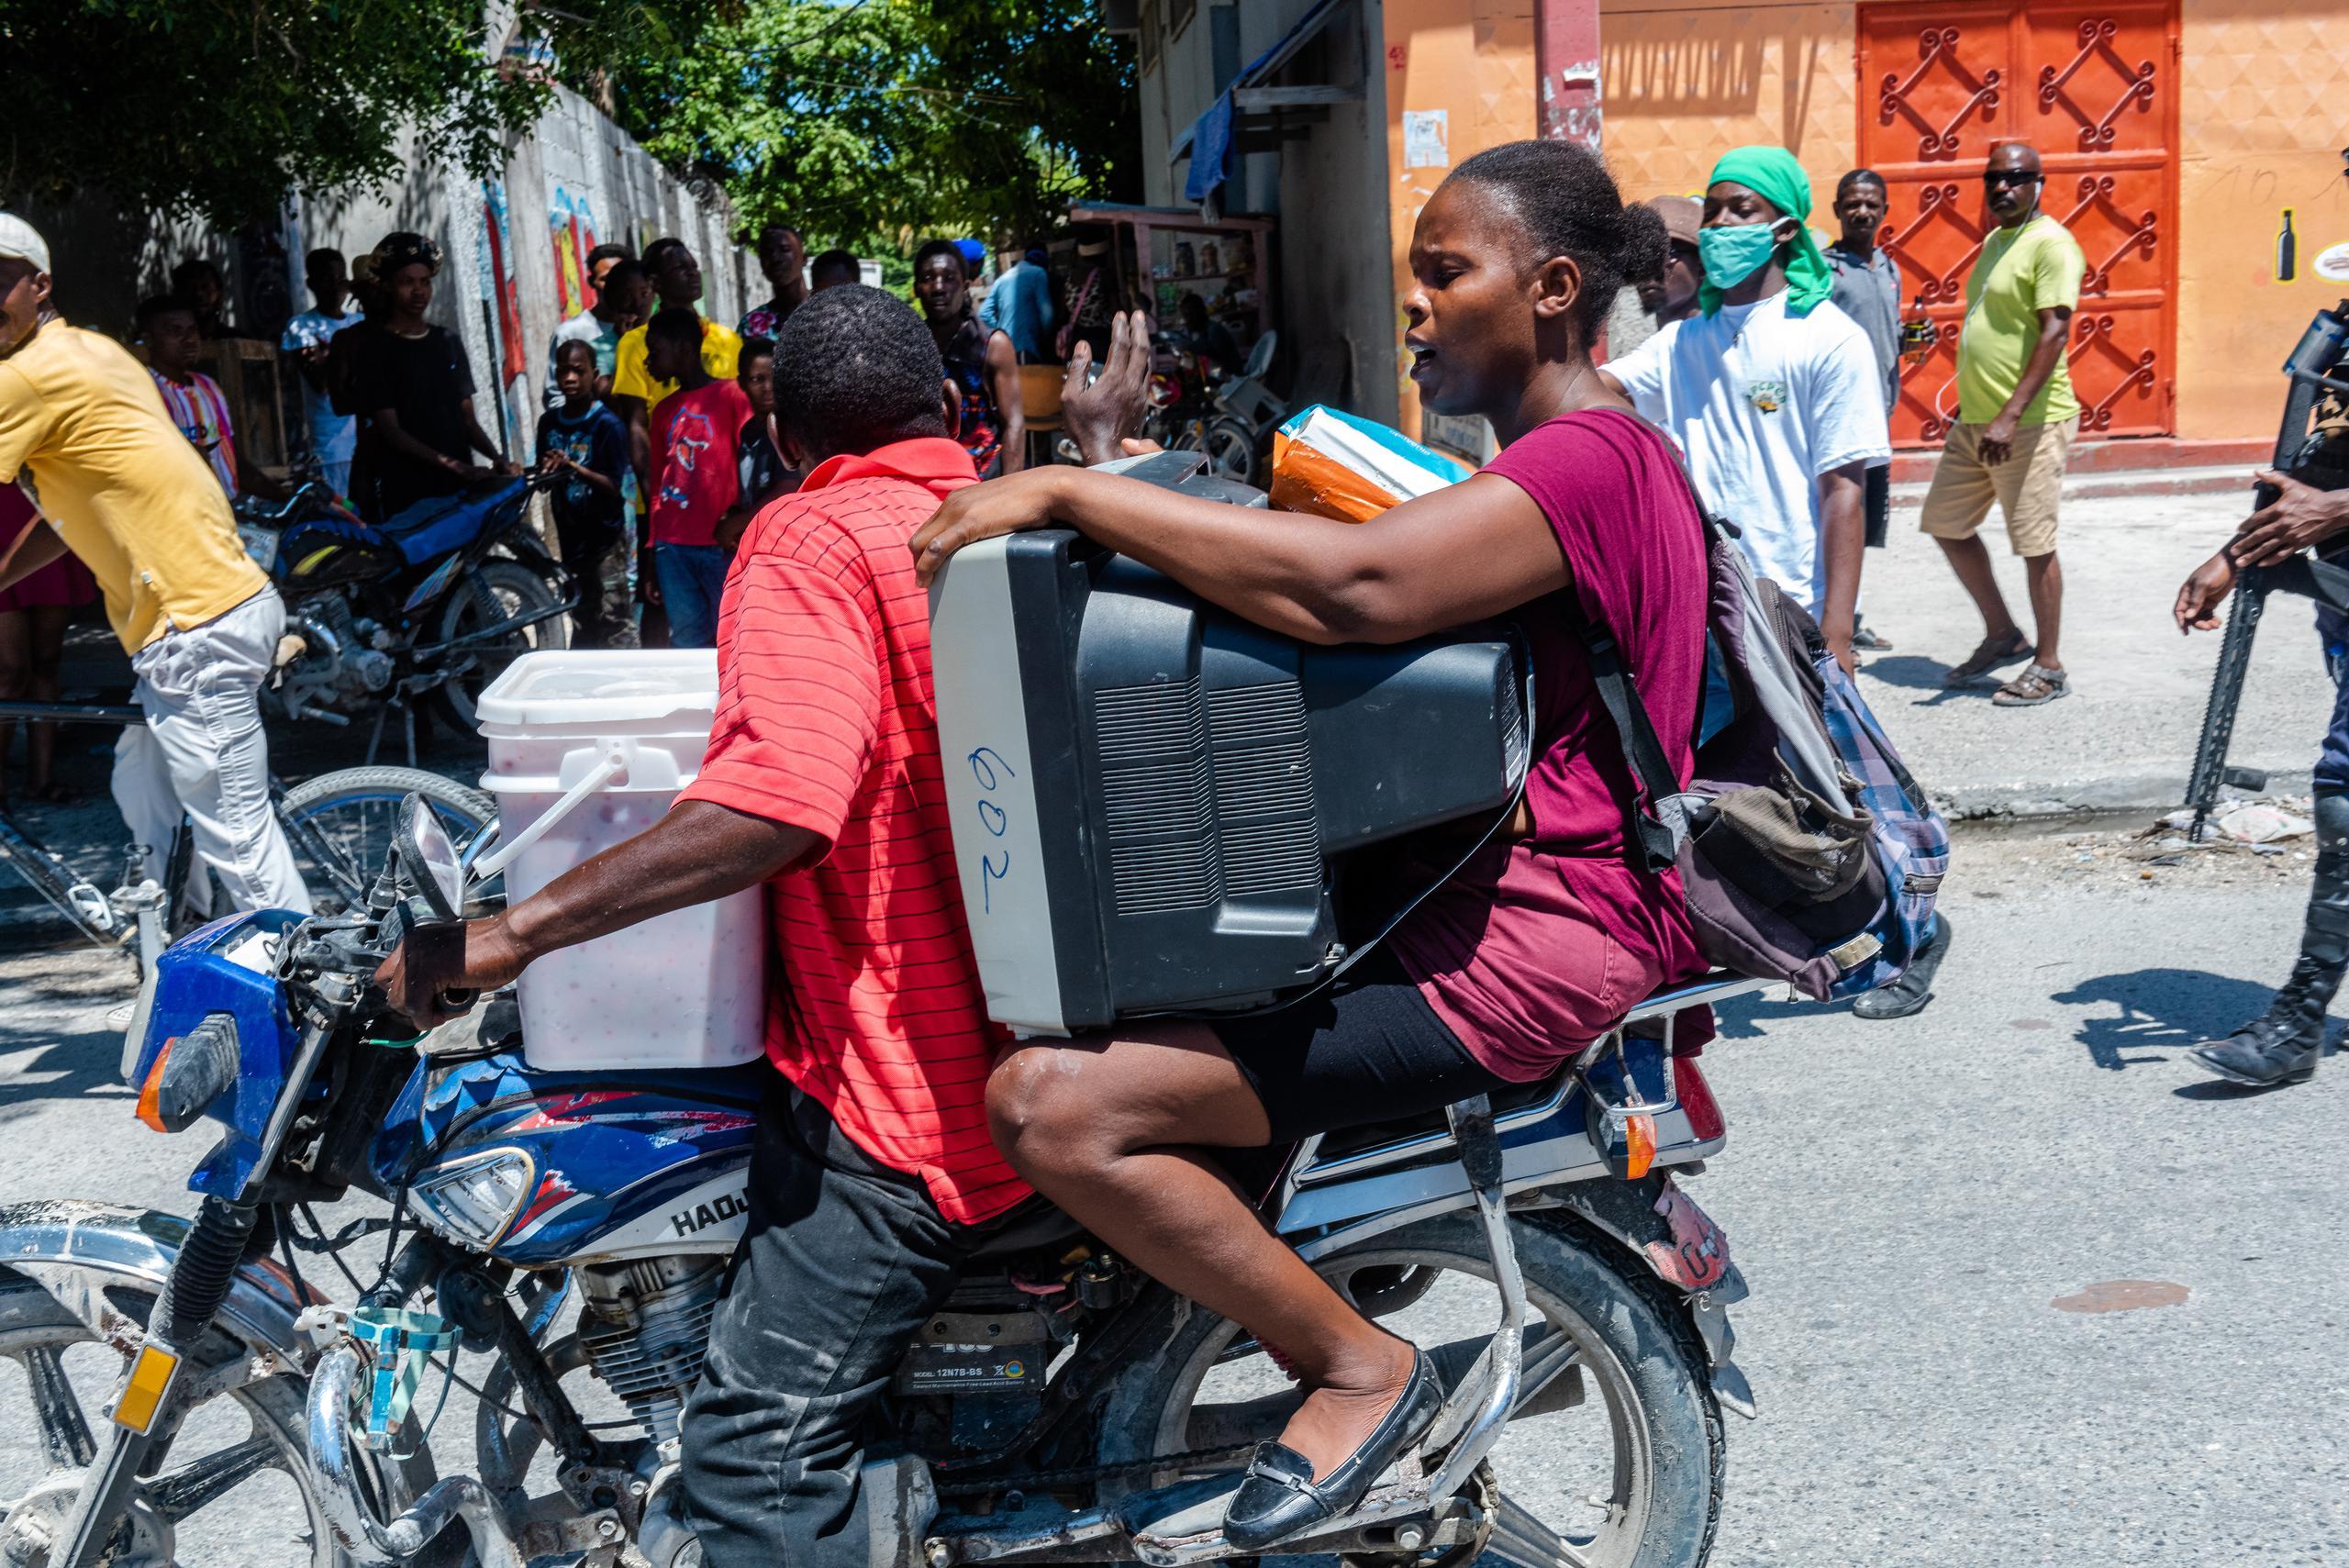 Una mujer fue registrada este viernes al llevar un televisor y otras pertenencias mientras huye en una motocicleta de la violencia de las bandas armadas, en Puerto Príncipe, Haití.